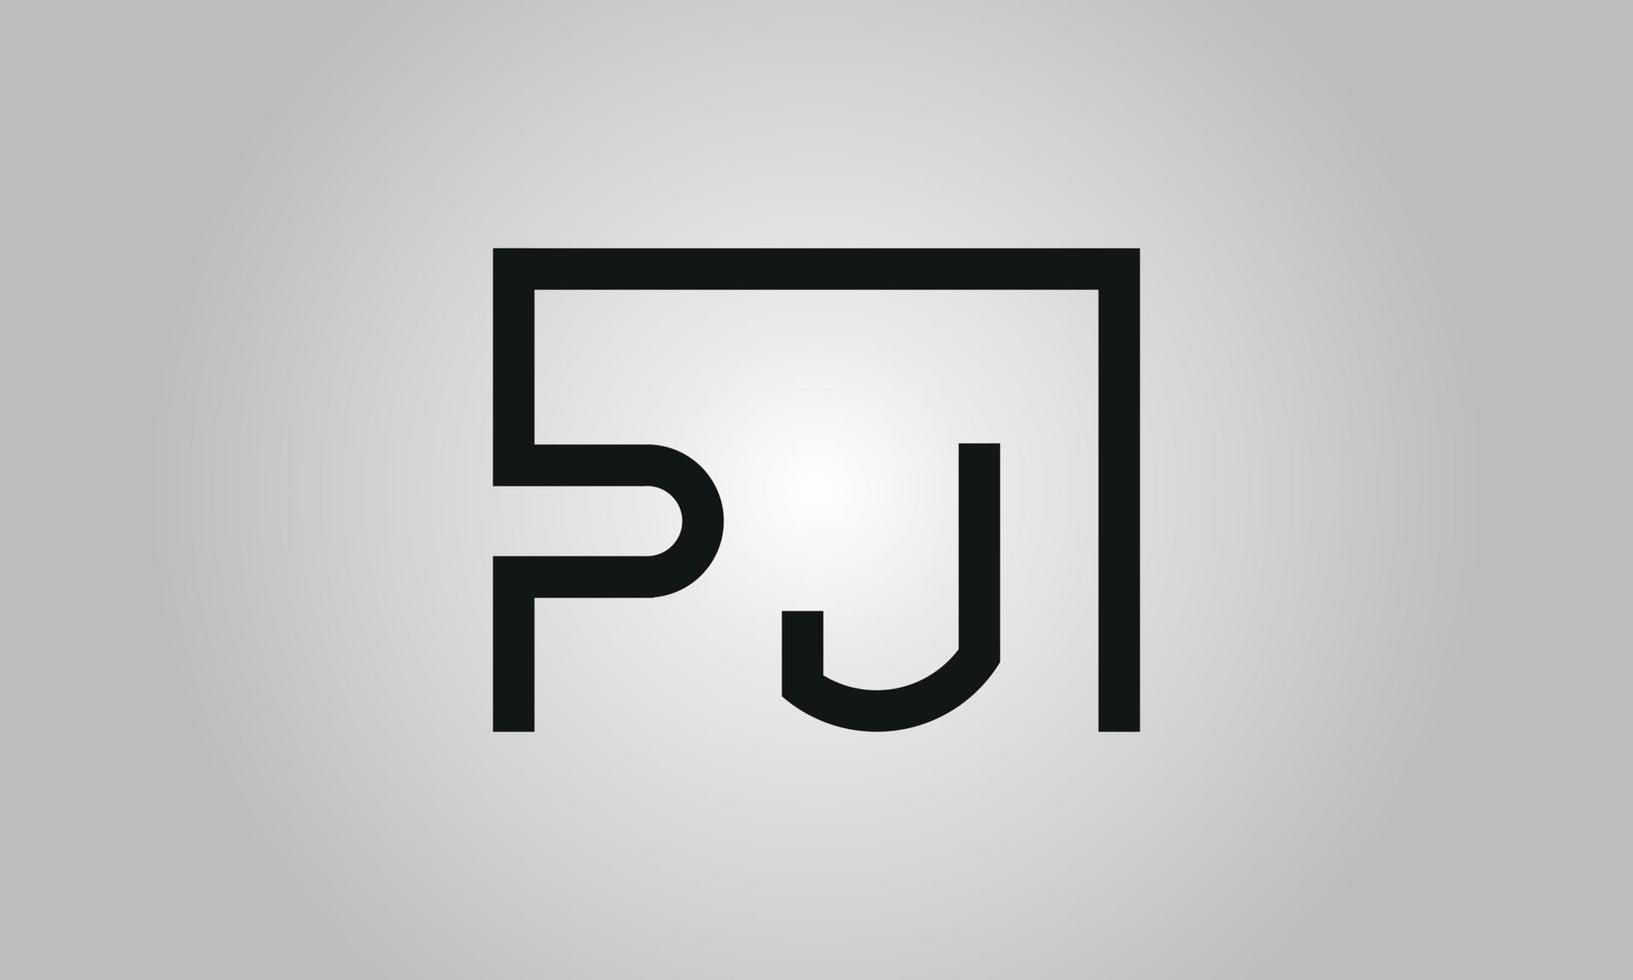 carta pj design de logotipo. pj logotipo com forma quadrada em cores pretas modelo de vetor livre.